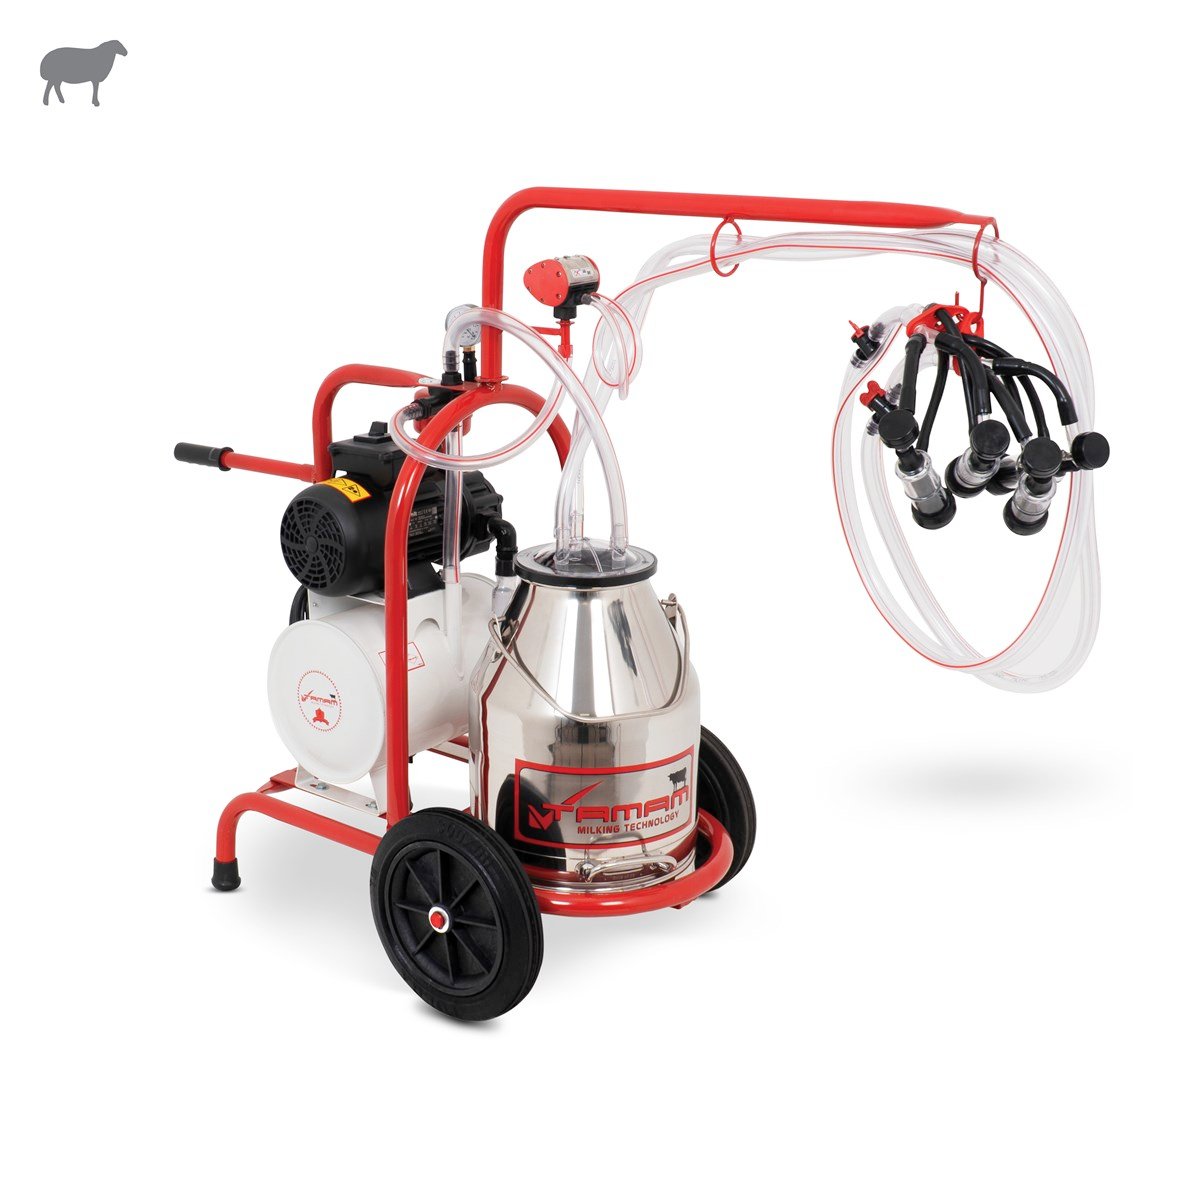 Tamam İkili Koyun Süt Sağma Makinesi (Paslanmaz Güğüm-Kauçuk Memelik)  (Yağlı Pompa) | Cimritilki.com